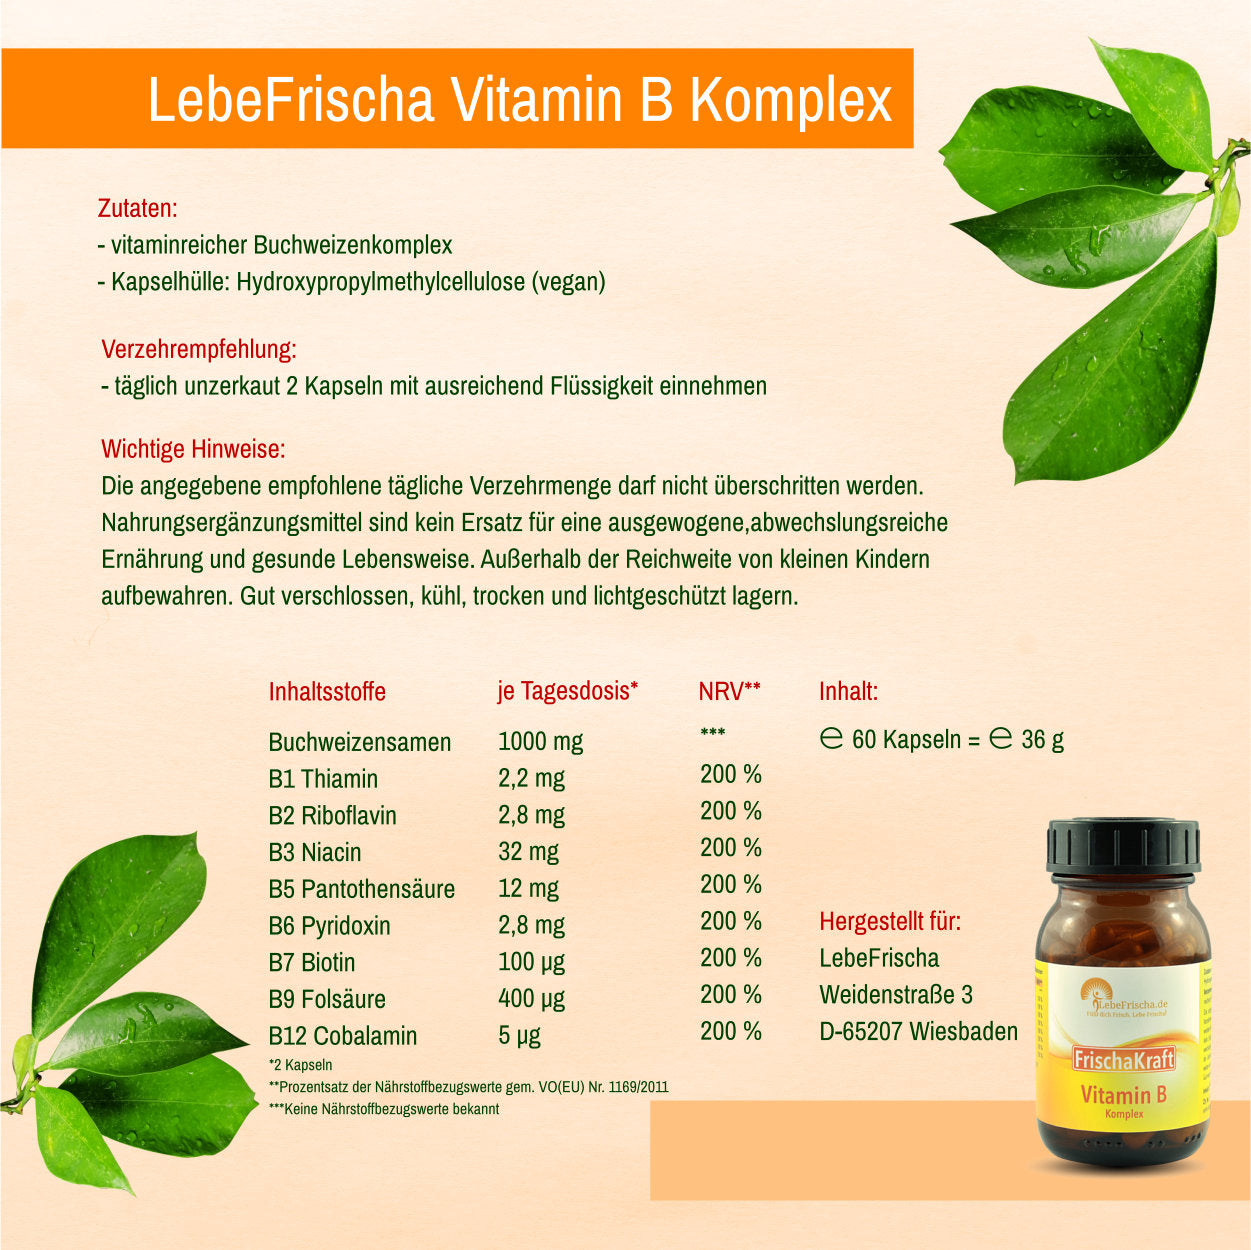 LebeFrischa Vitamin B Komplex | Alles auf einen Blick: Zutaten, Verzehrempfehlung, Inhaltsstoffe.